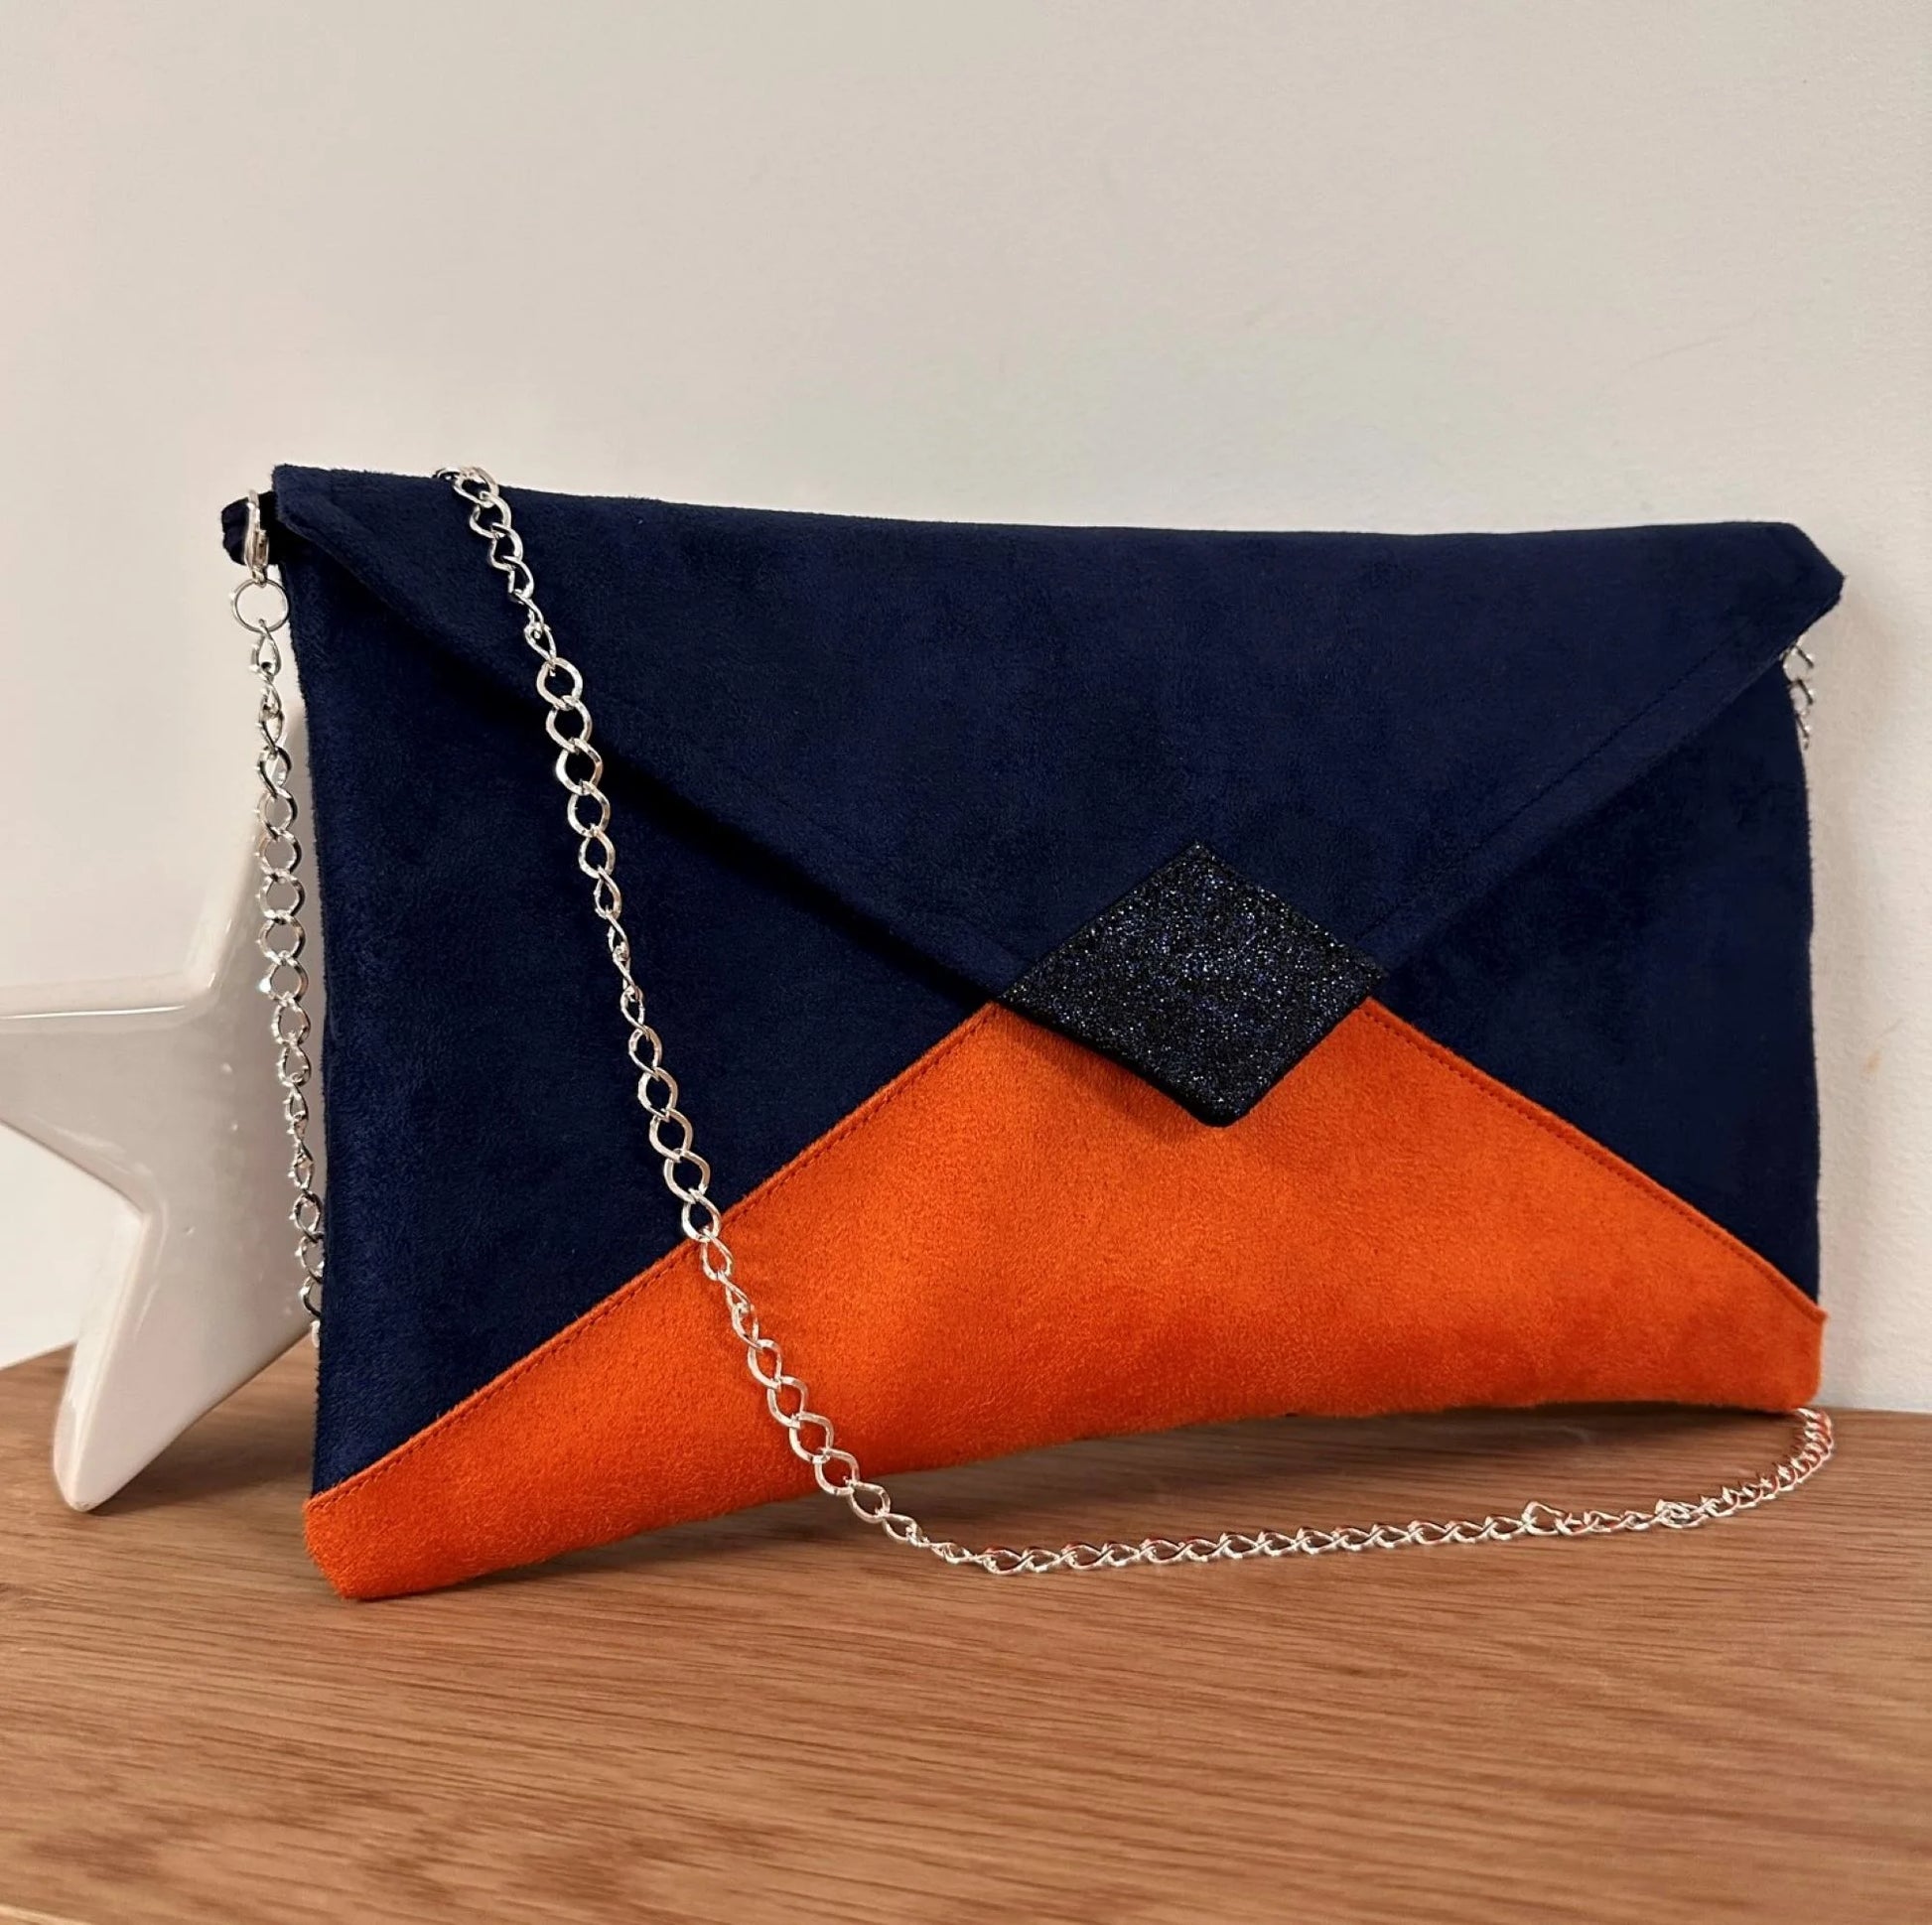 sac pochette Isa bleu marine et orange à paillettes, avec chainette argentée